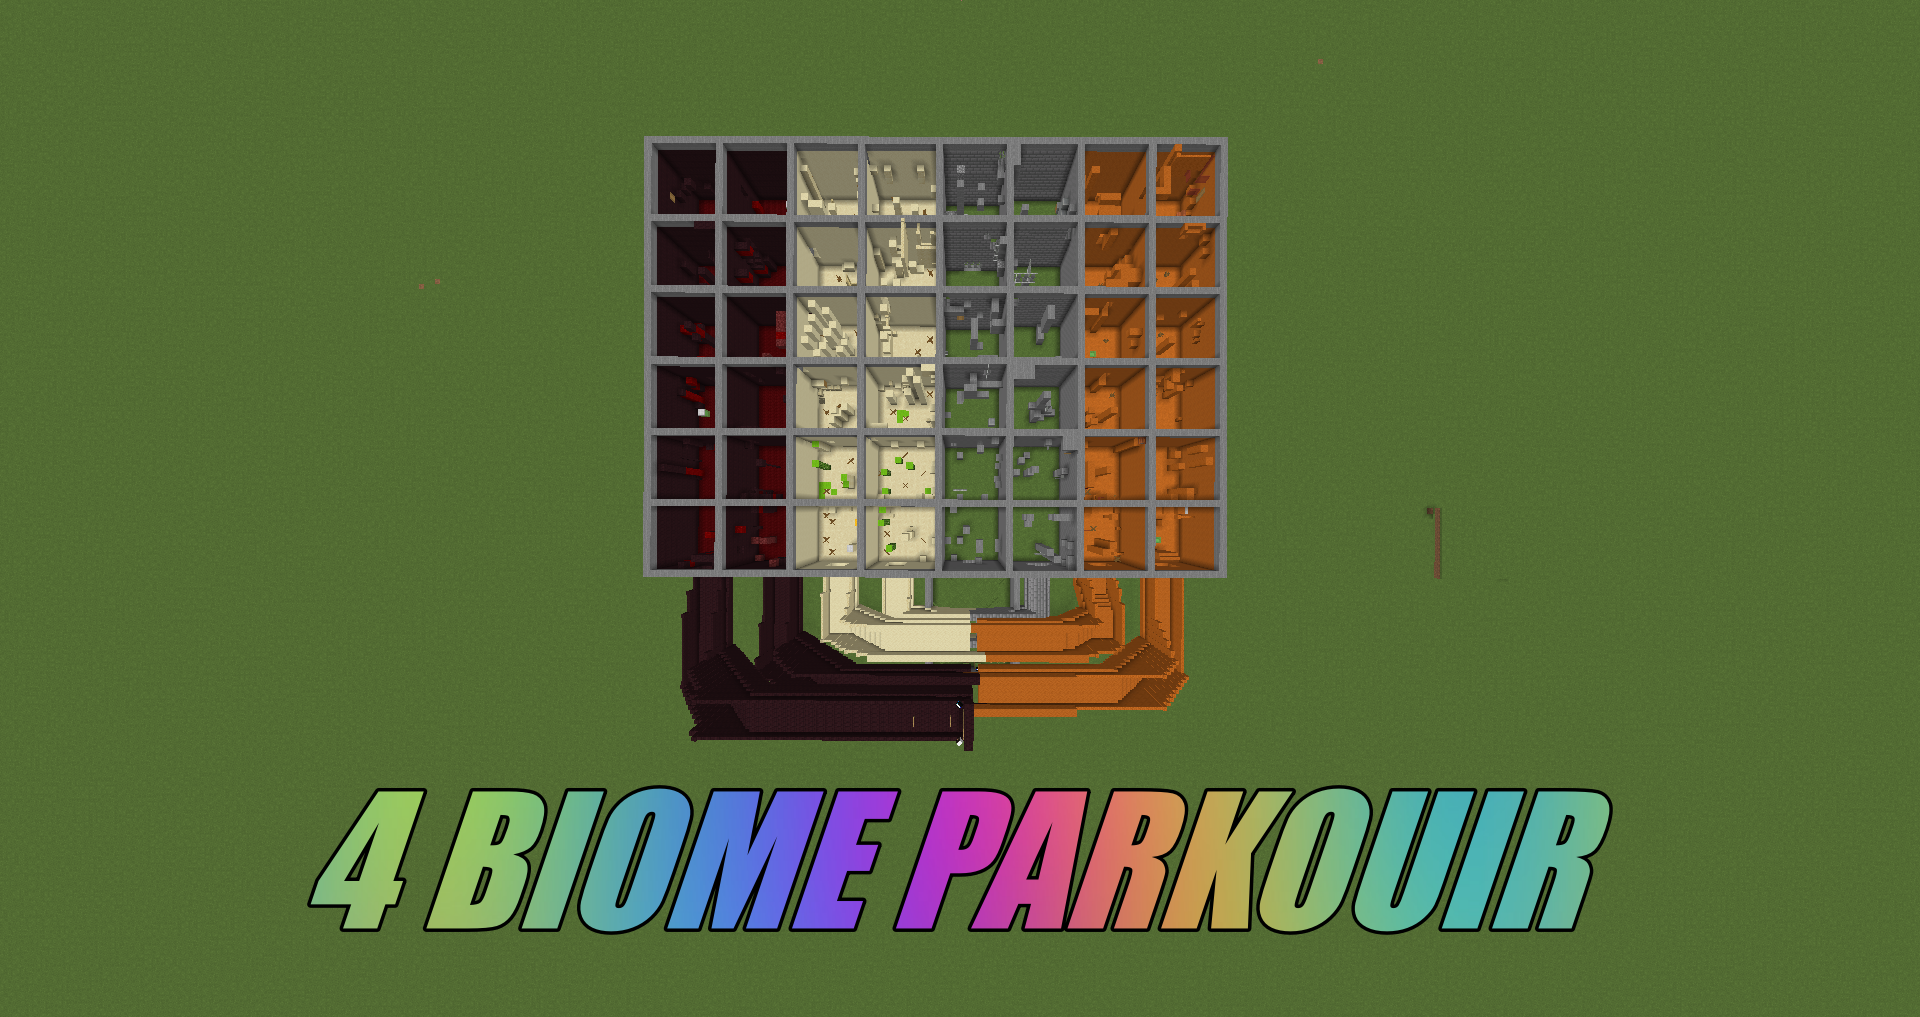 Descarca 4 Biome Parkour pentru Minecraft 1.16.5